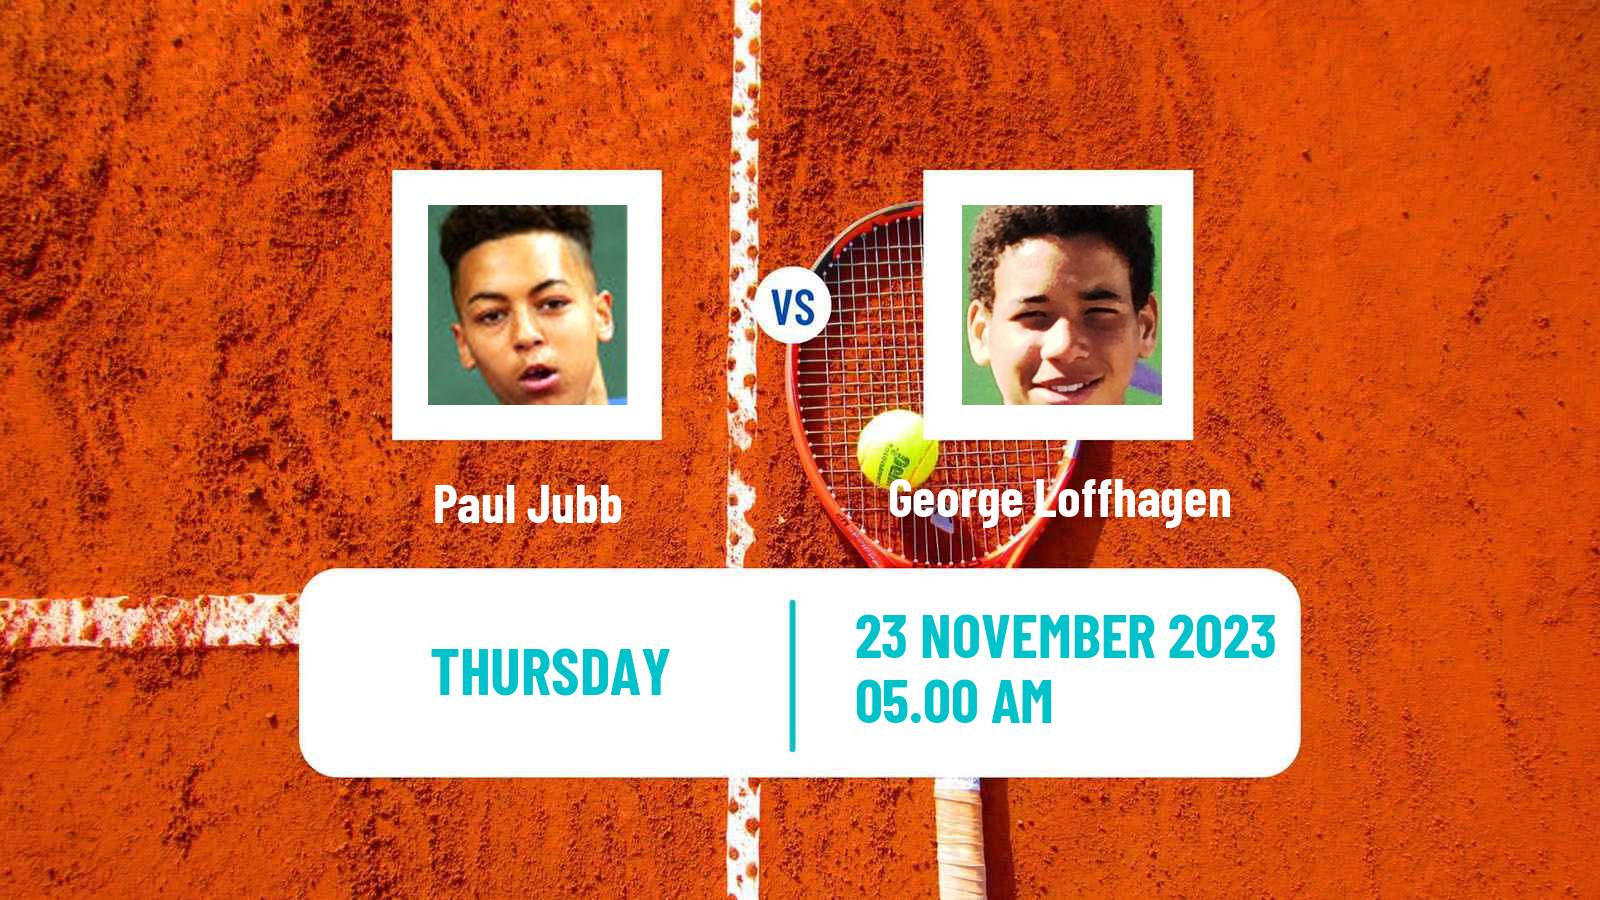 Tennis ITF M25 Vale Do Lobo 2 Men Paul Jubb - George Loffhagen